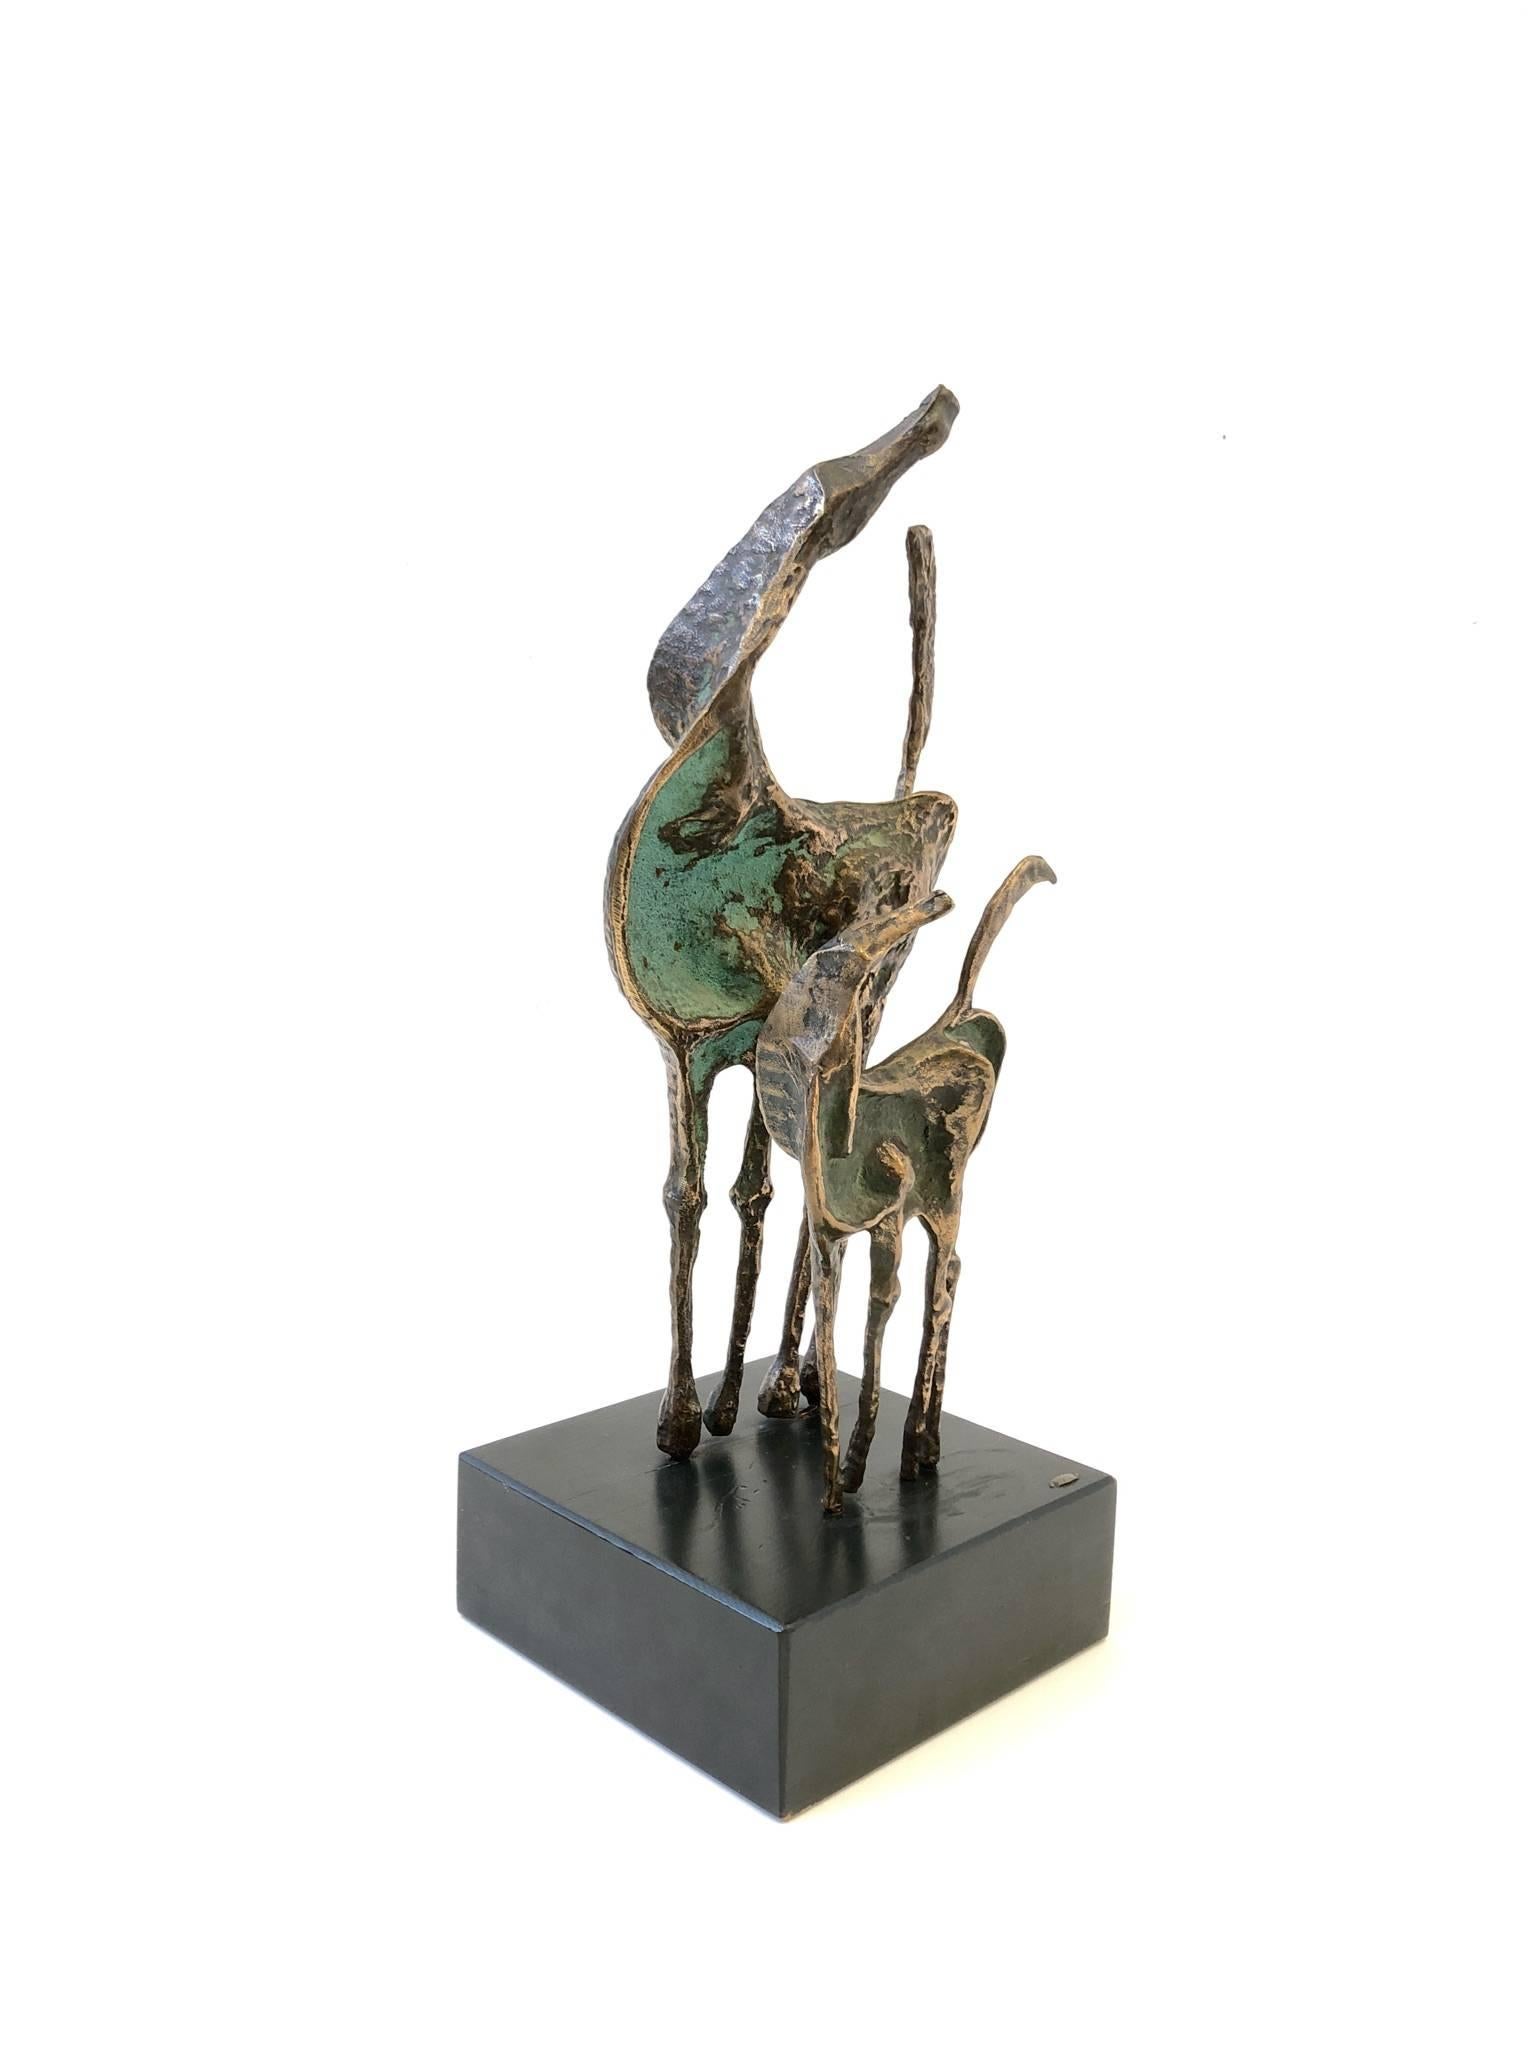 Une magnifique sculpture de chevaux en bronze coulé des années 1970, réalisée par le célèbre designer Curtis Jerè.
La sculpture a une belle patine et est montée sur une base en bois laqué. 
La sculpture est signée et datée de 1970.

Dimensions :